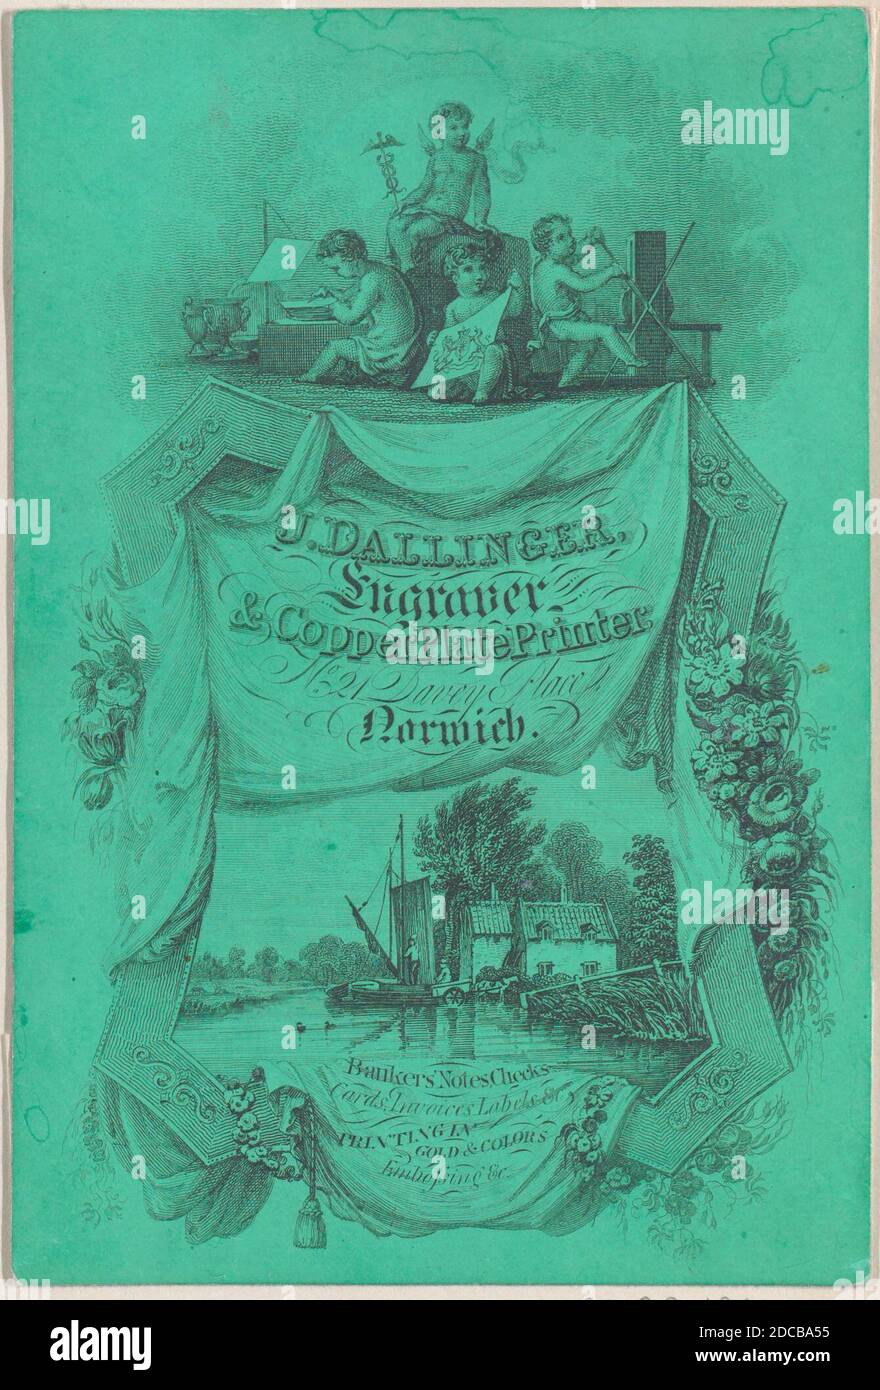 Carte de commerce pour J. Dallinger, Engraver et imprimante de plaques de cuivre, 19e siècle. Banque D'Images